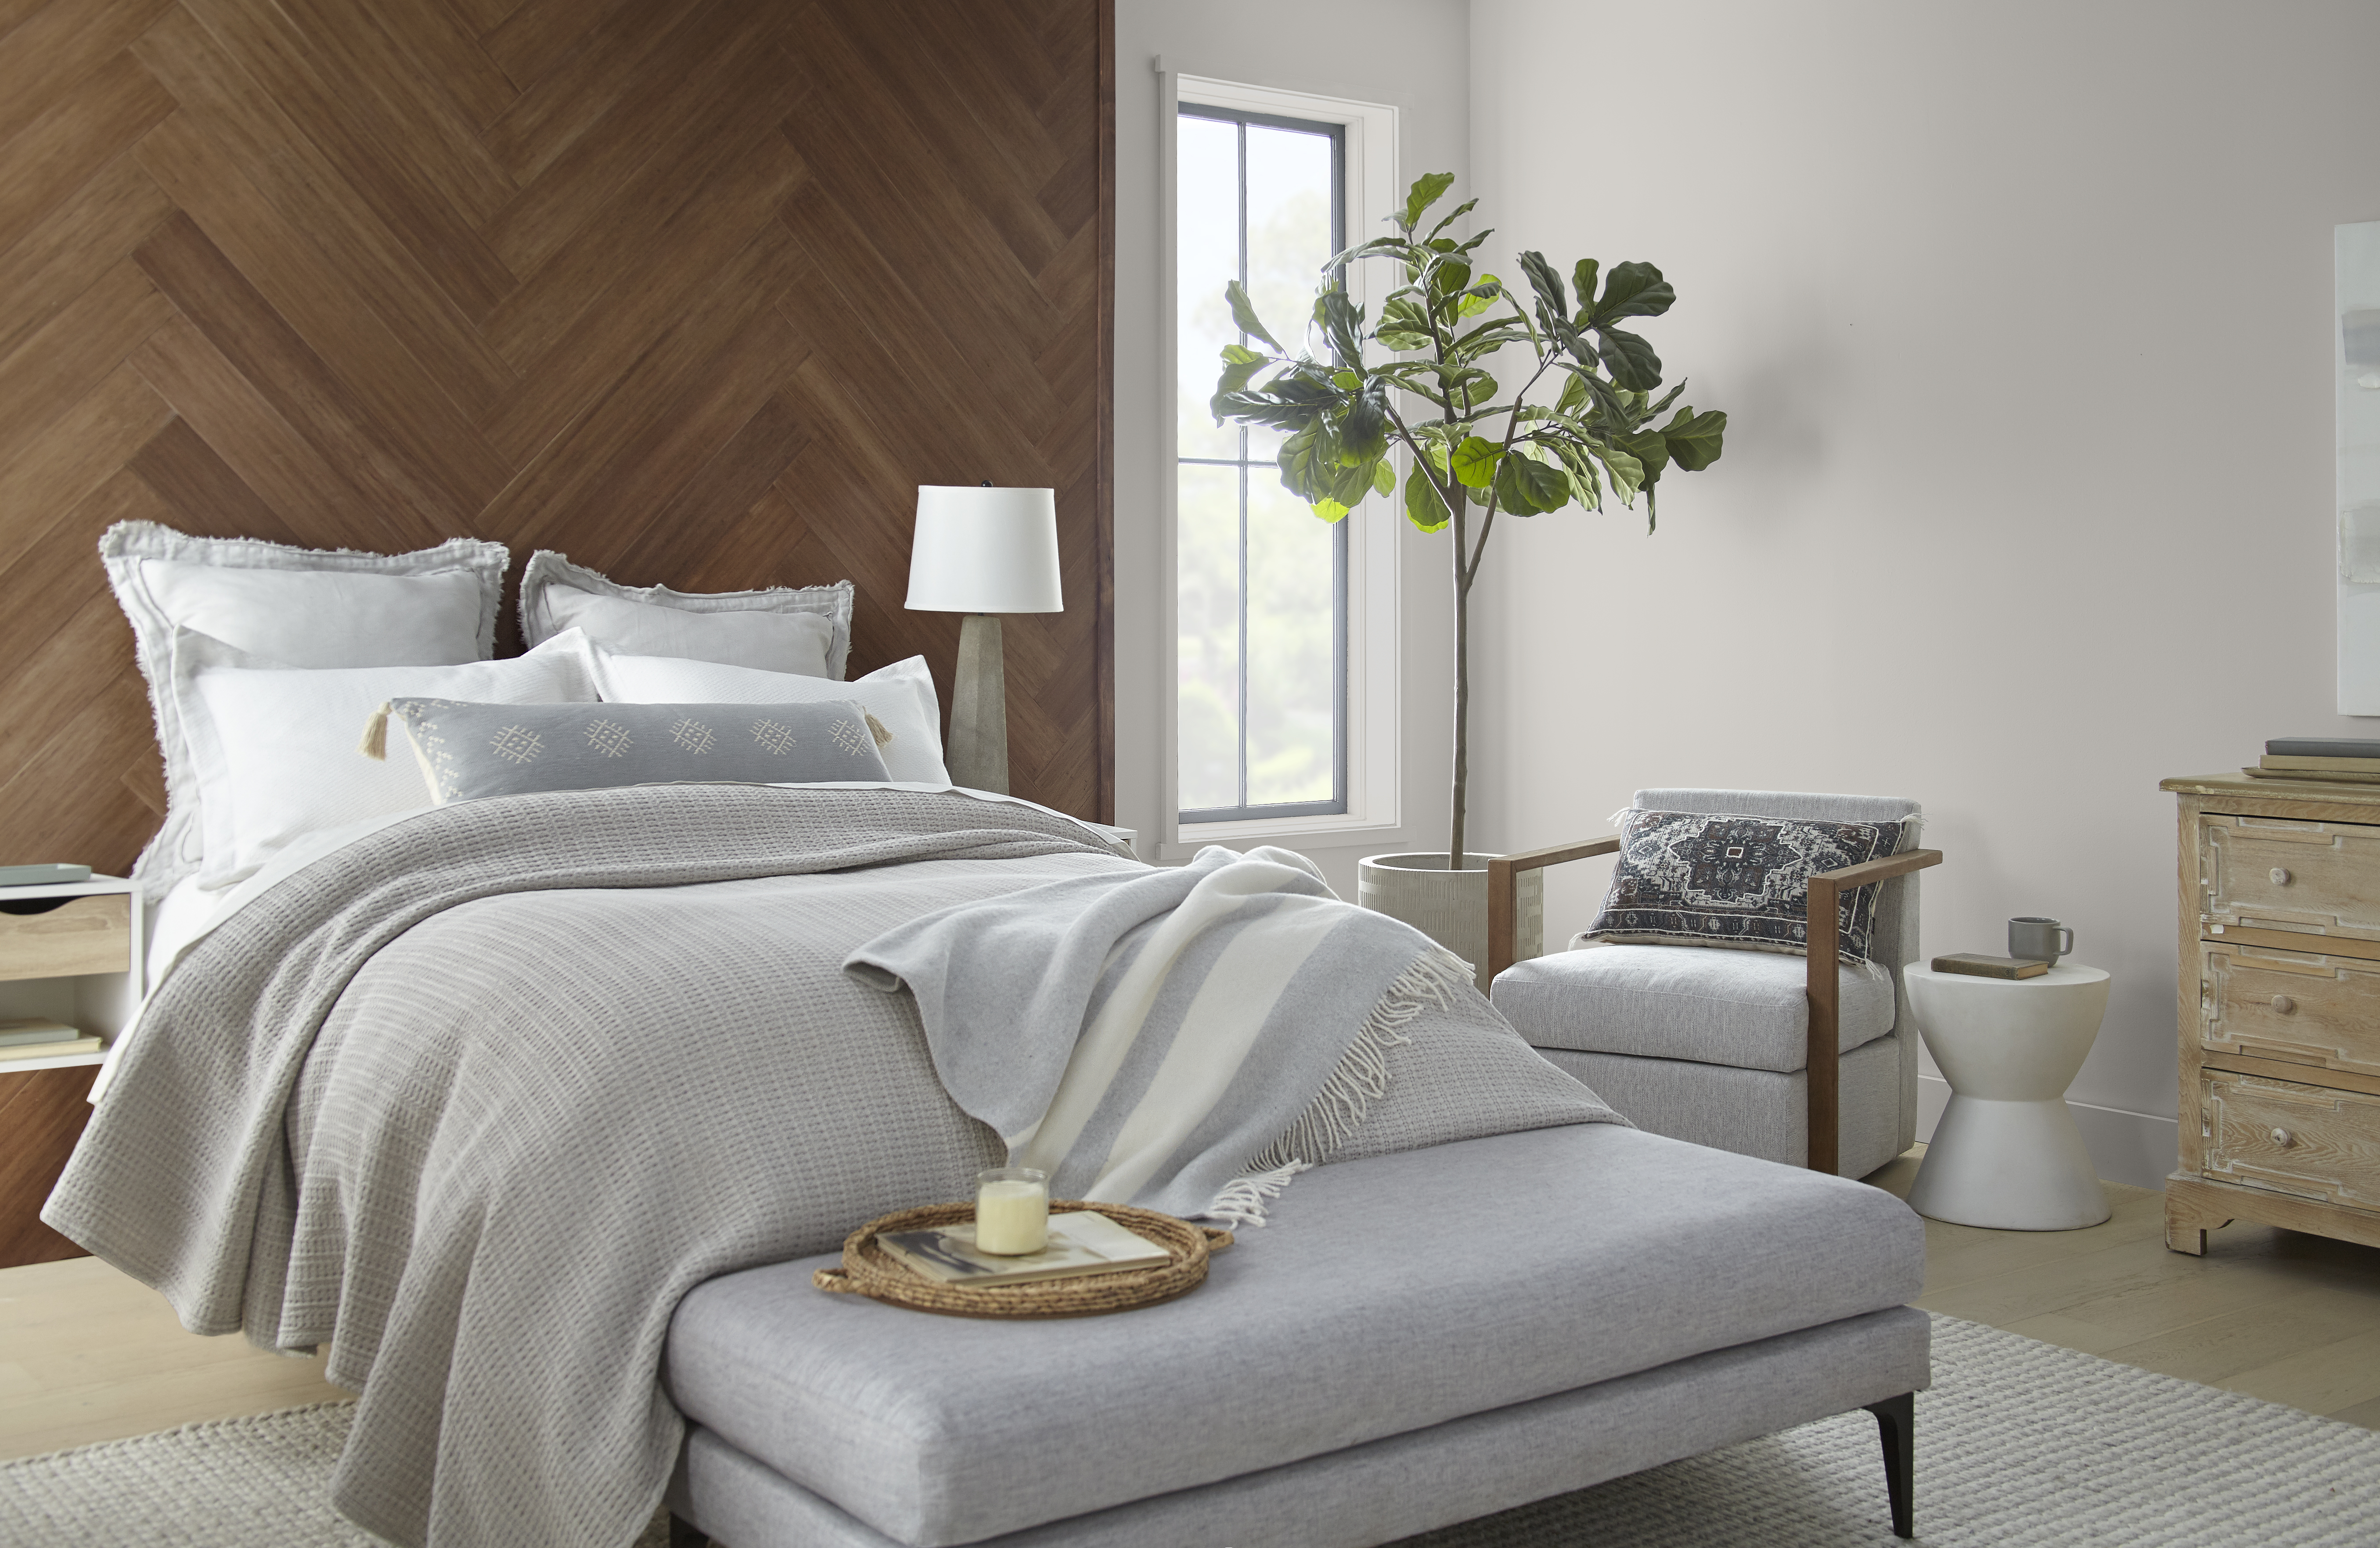 Une chambre à coucher avec une tête de lit en bois et des murs latéraux peinturés en un grège clair